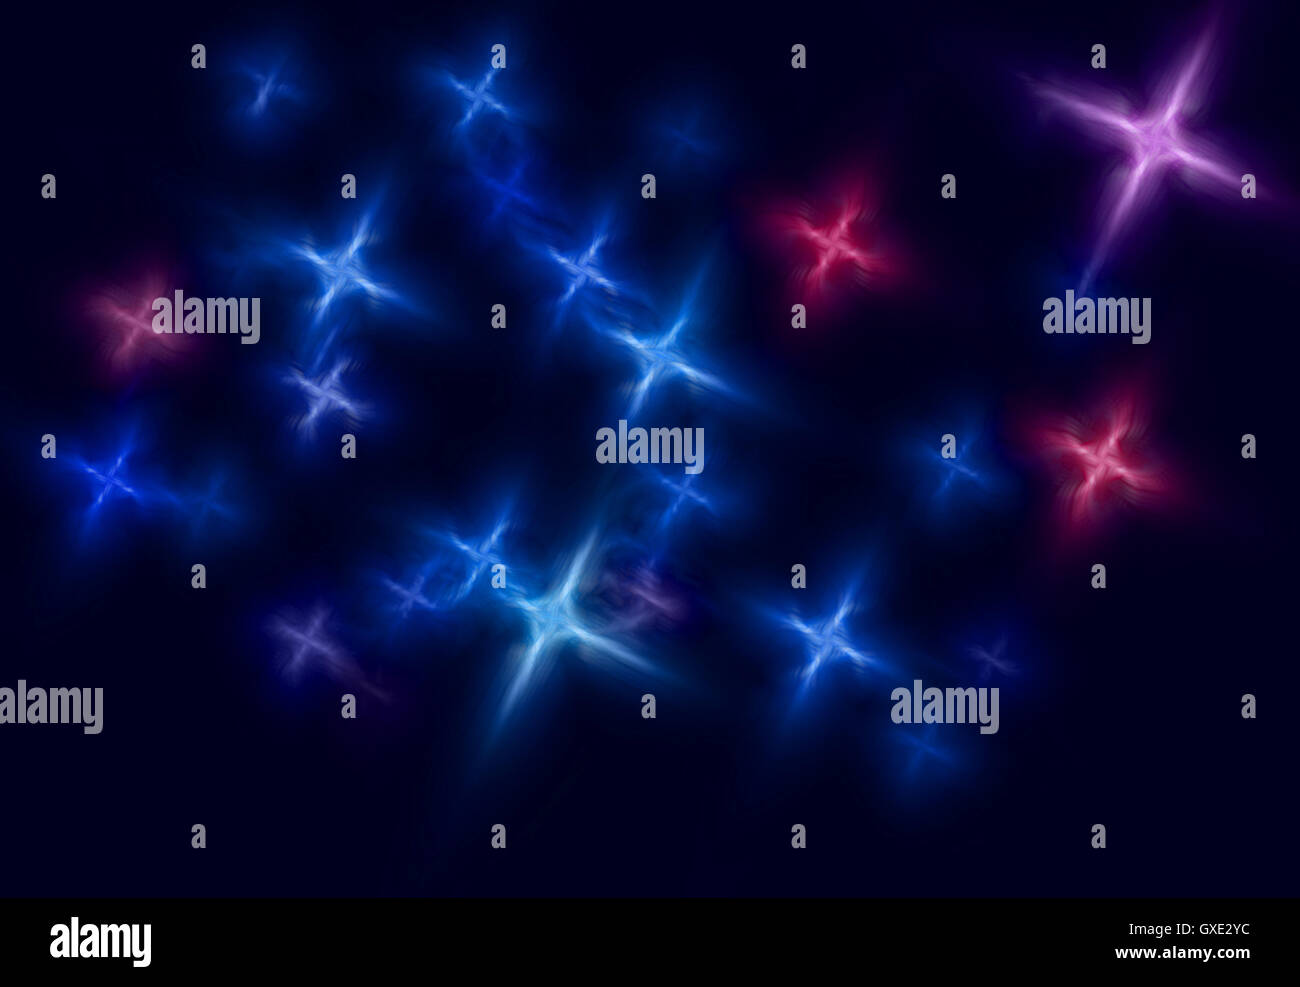 Spazio astratto sfondo stellato illustrazione composta da stilizzata di rosso e di blu stelle che formano un disegno su sfondo scuro. Foto Stock